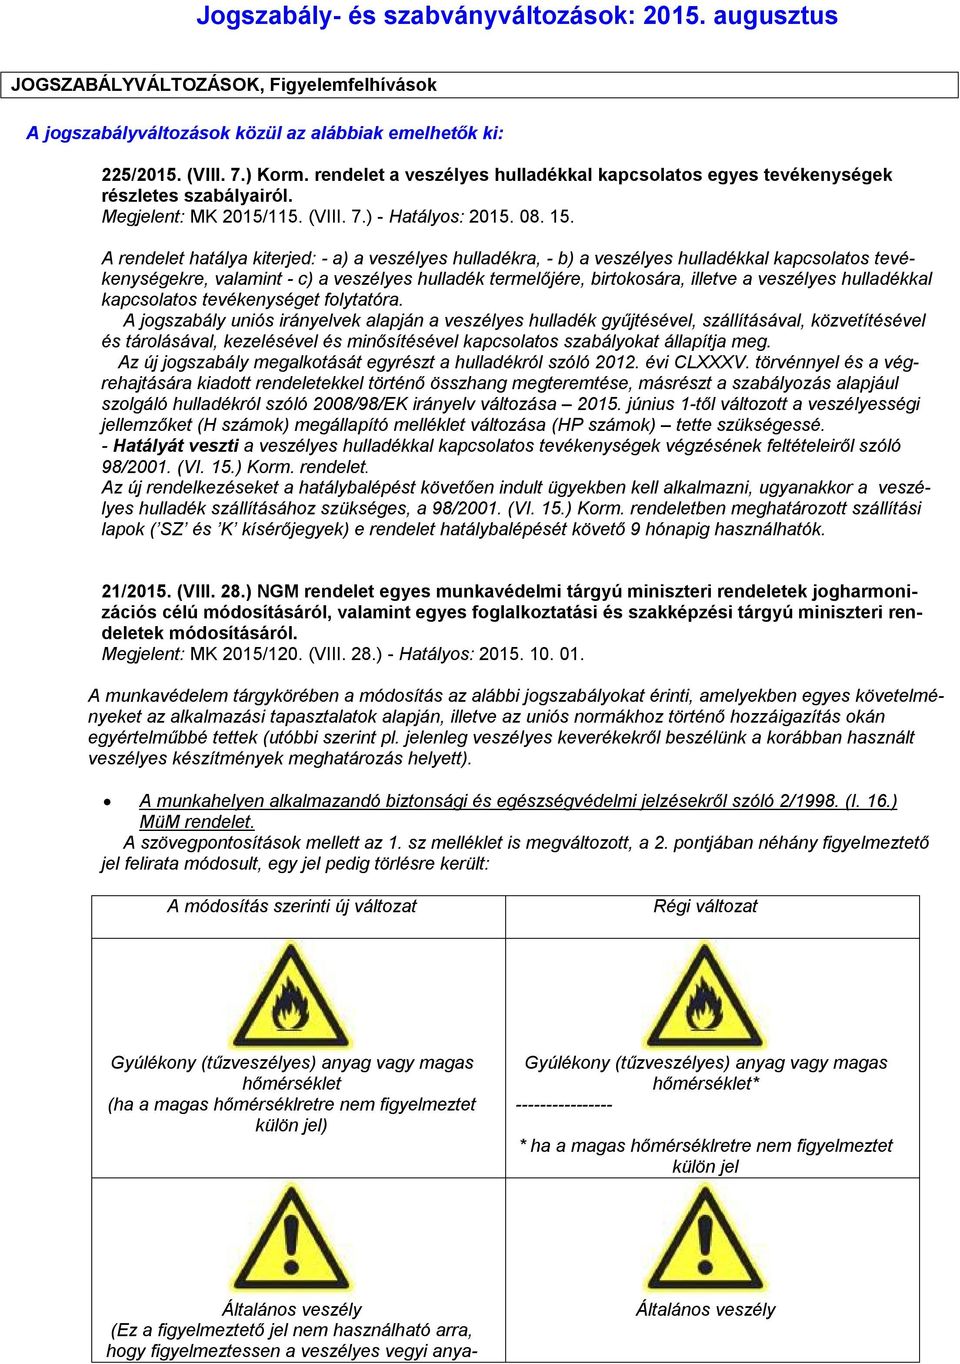 Jogszabály- és szabványváltozások: augusztus - PDF Ingyenes letöltés